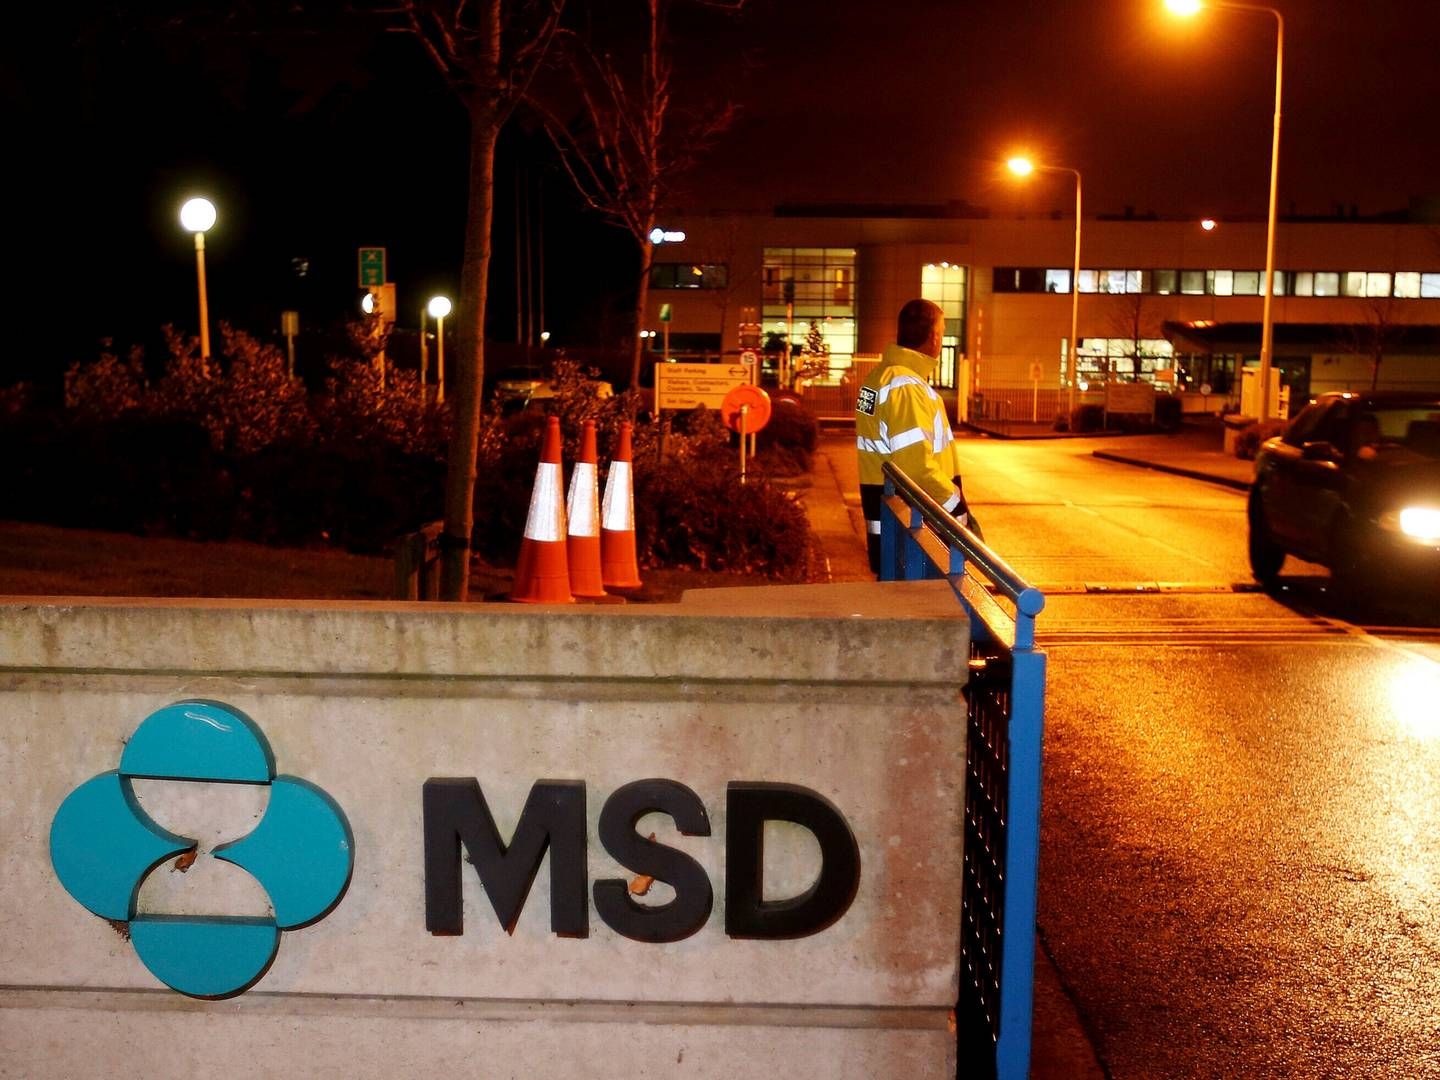 Der var overvejende godt nyt til medicinalselskabet MSD, da Medicinrådet stak hovederne sammen på et rådsmøde torsdag. | Foto: Brian Lawless/AP/Ritzau Scanpix